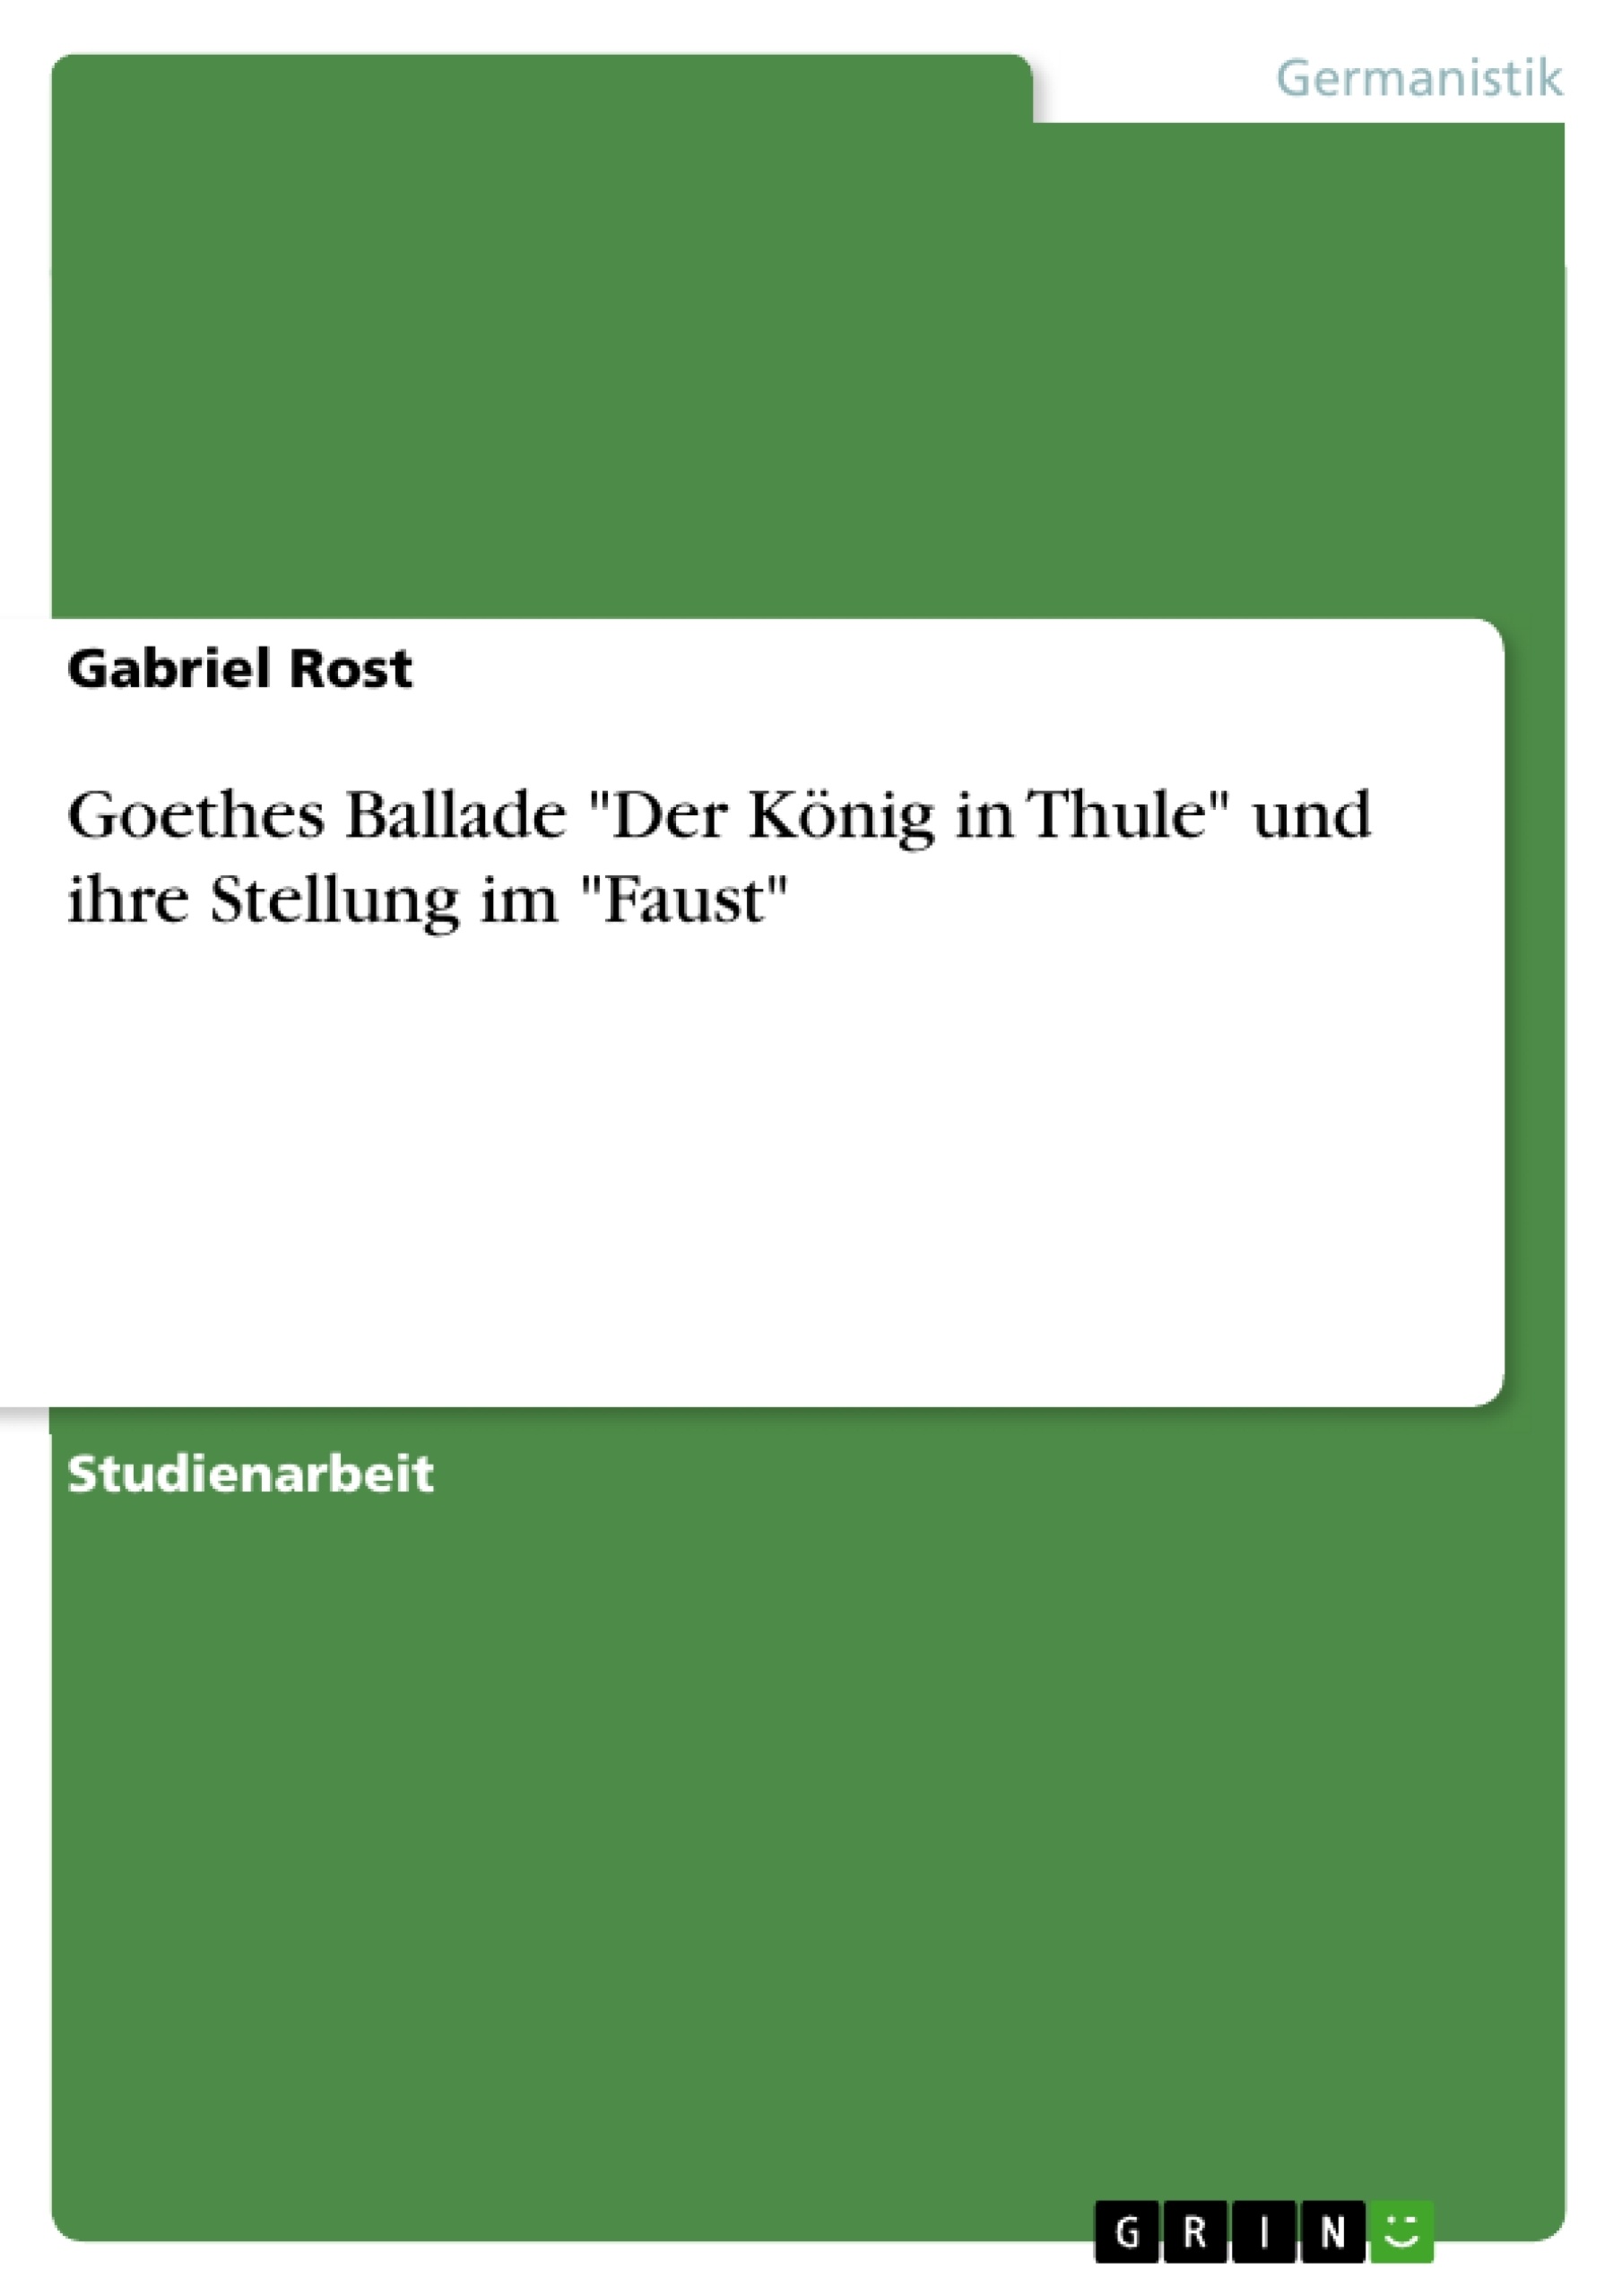 Title: Goethes Ballade "Der König in Thule" und ihre Stellung im "Faust"